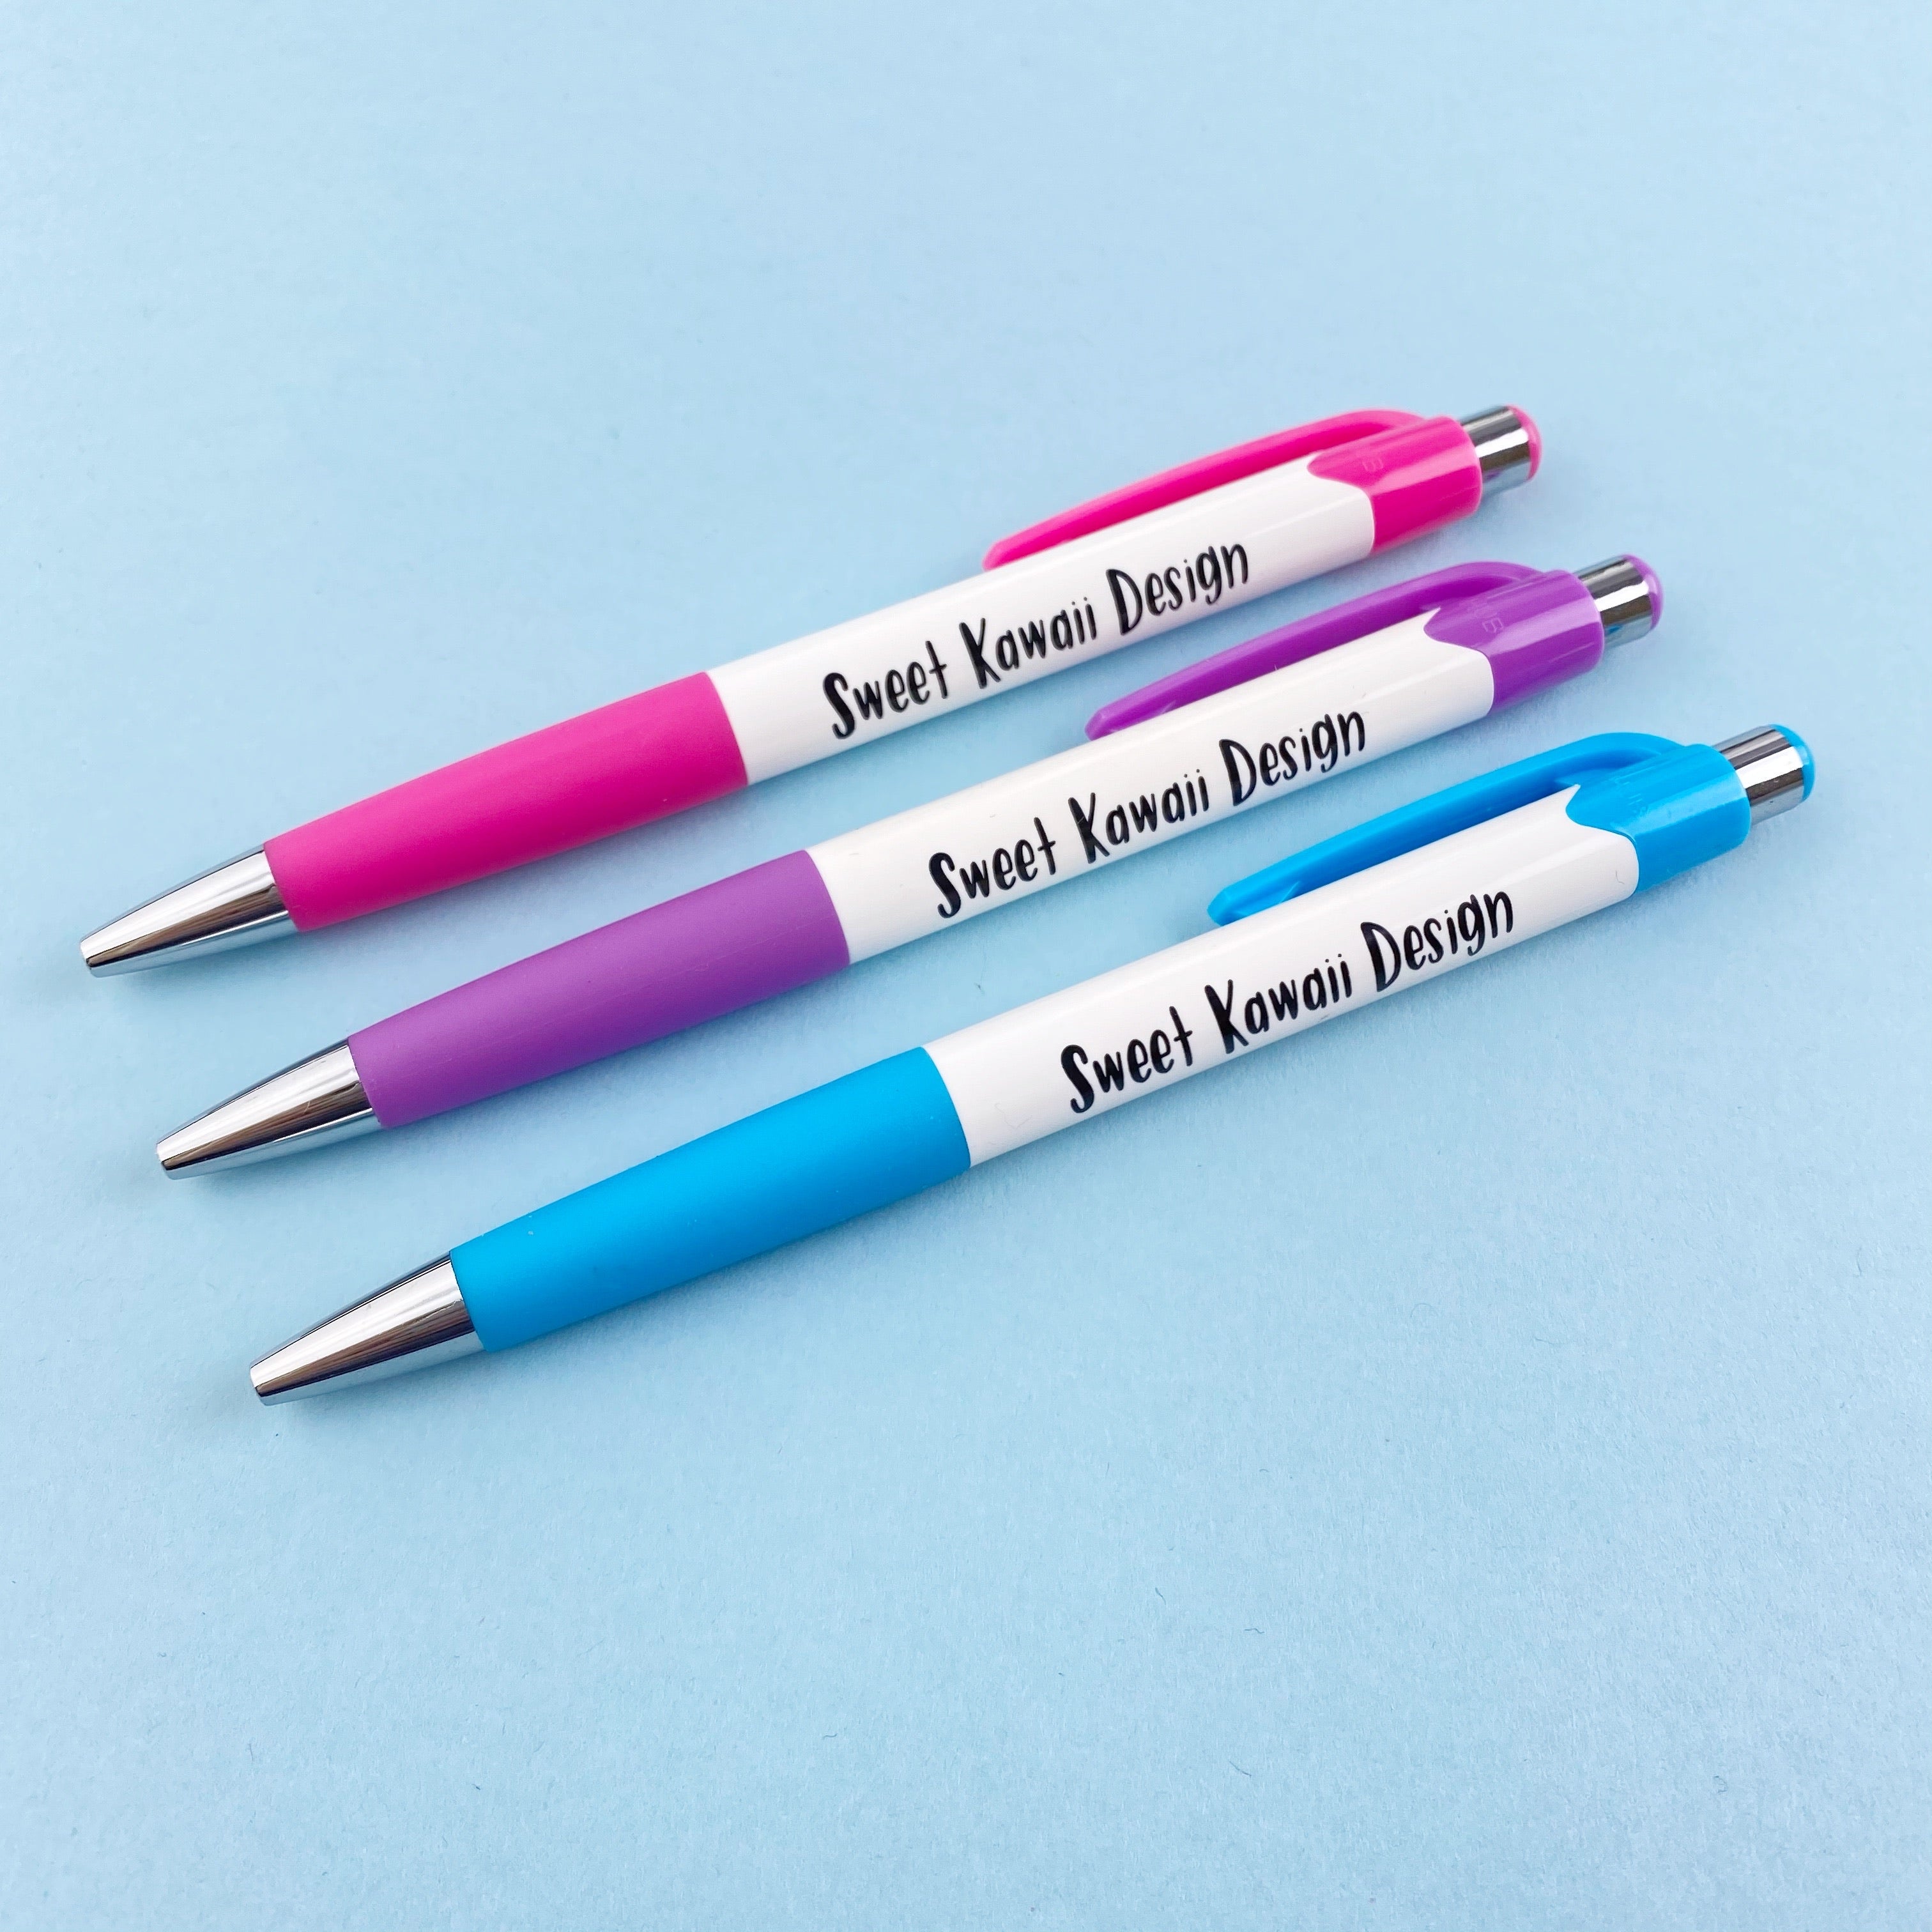 Sweet Kawaii Design Ballpoint Pen